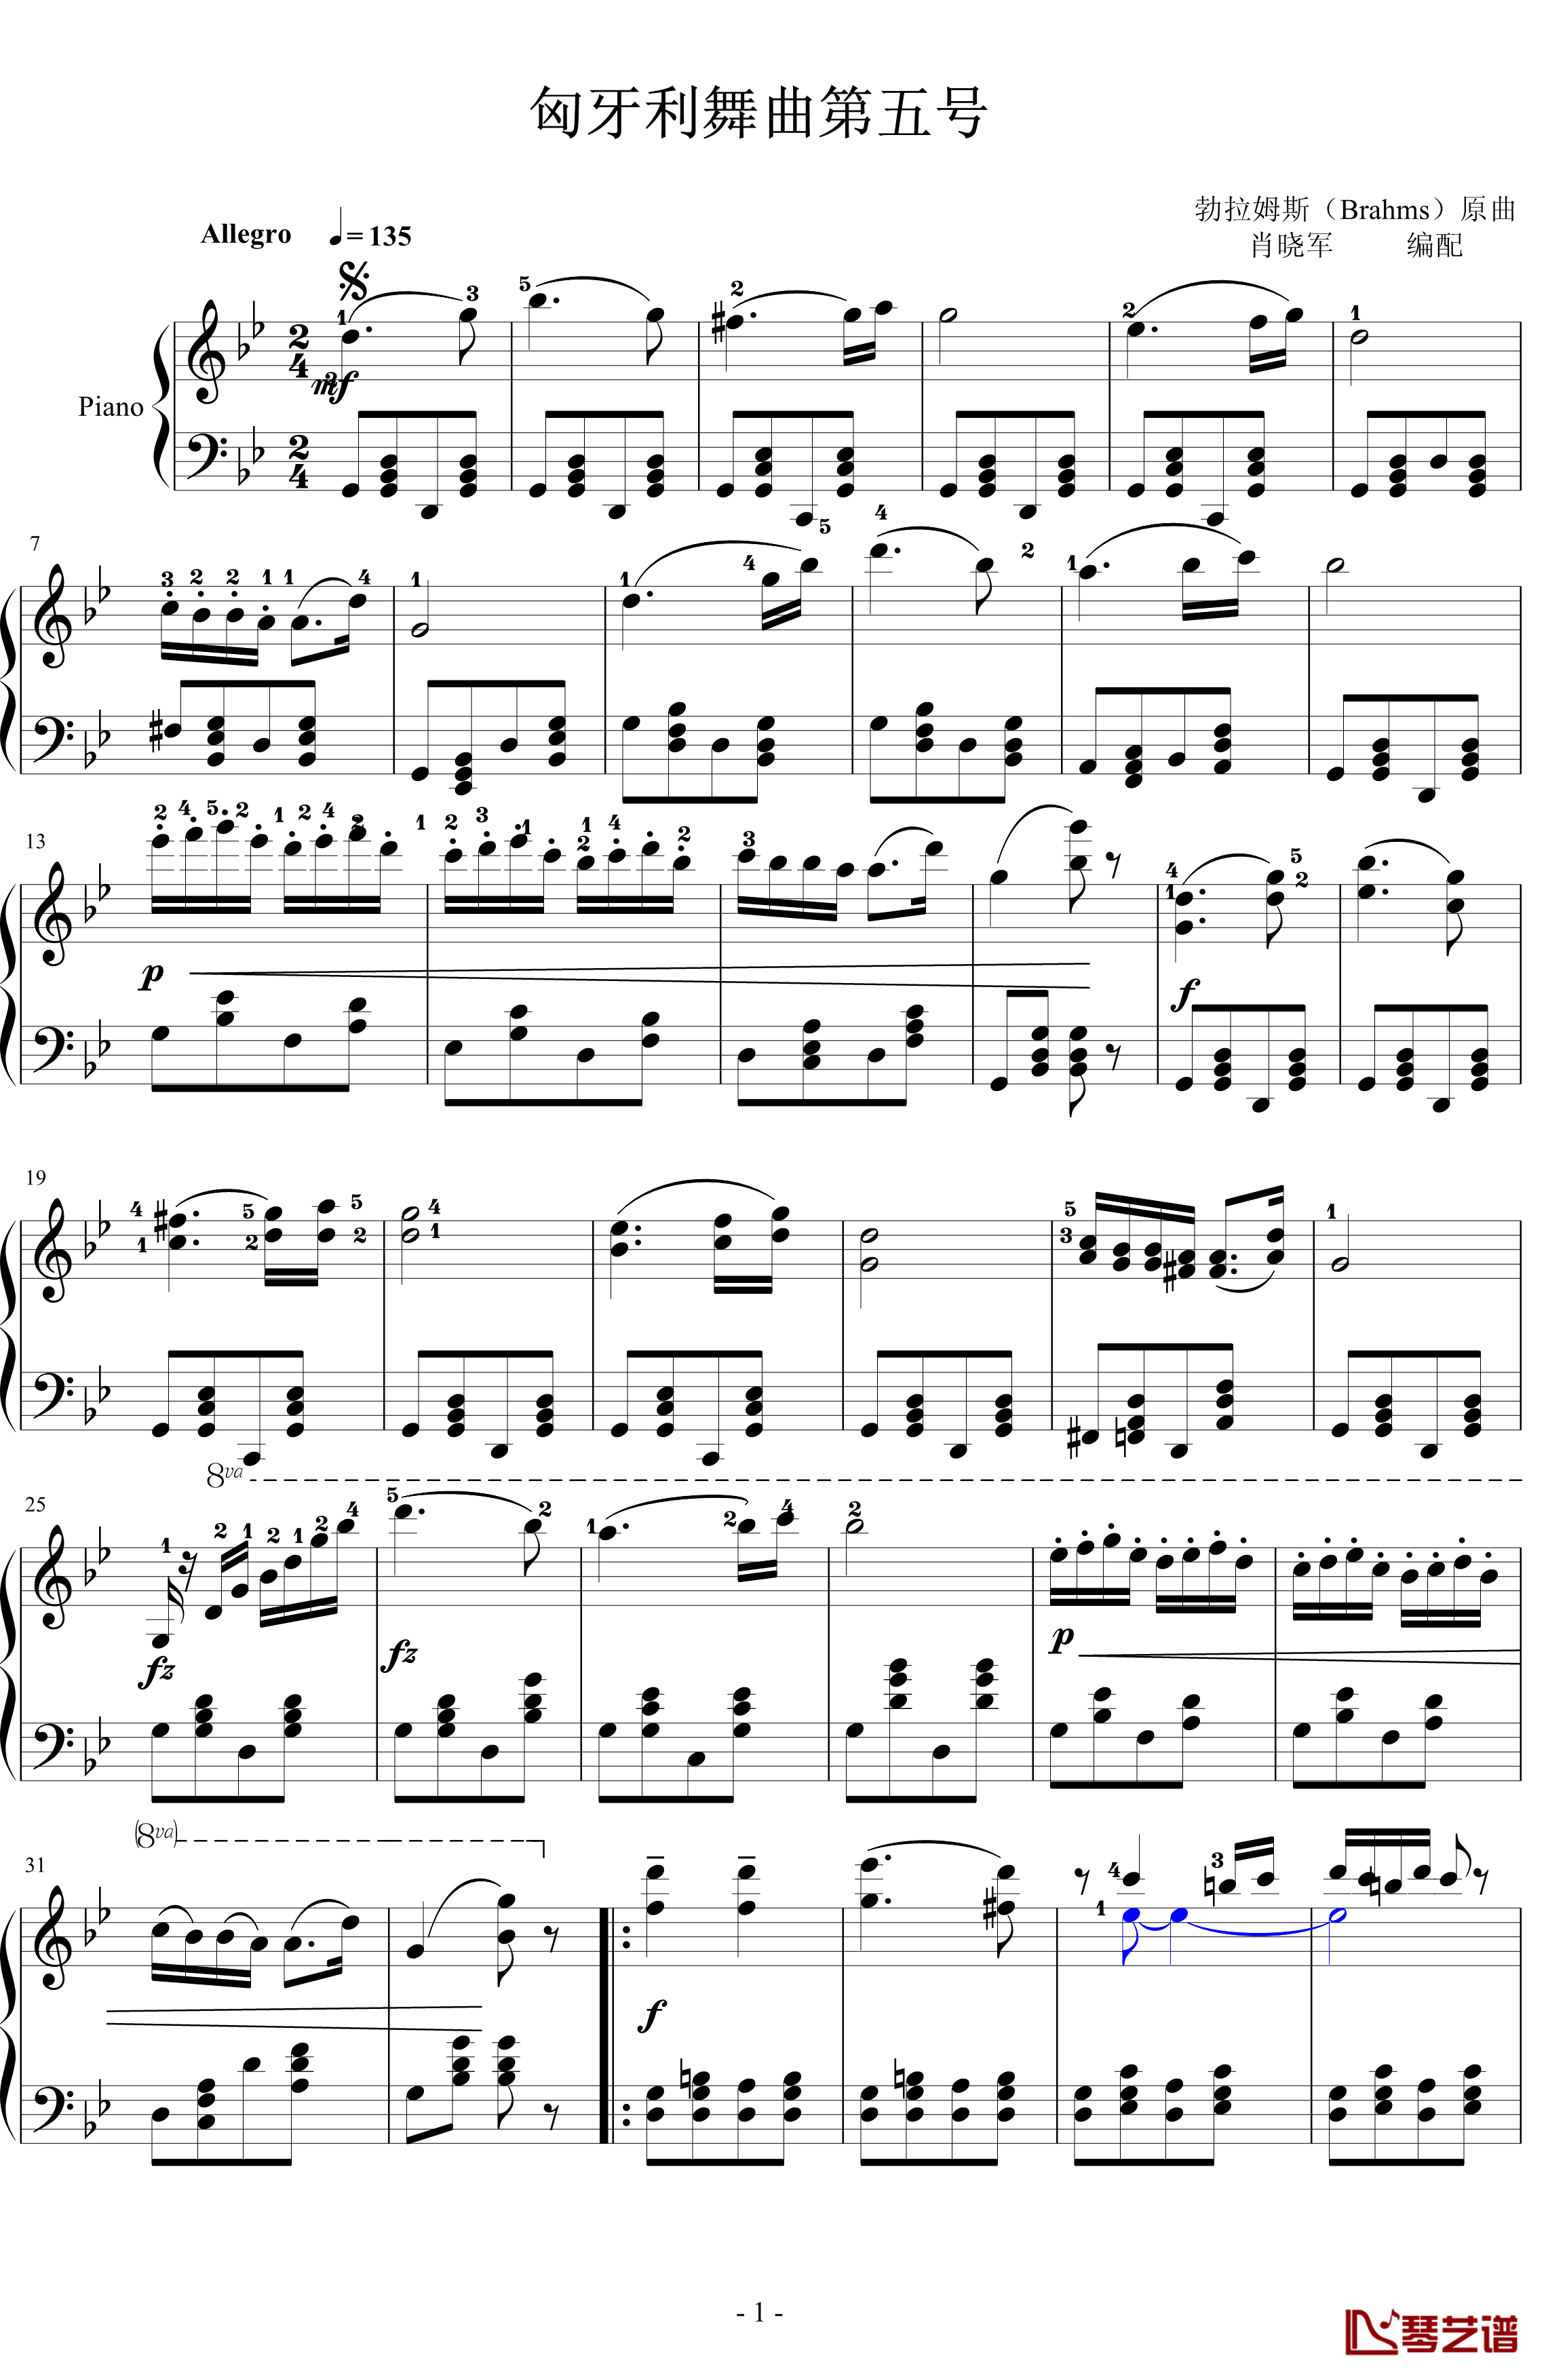 匈牙利舞曲第五号钢琴谱-勃拉姆斯-Brahms1